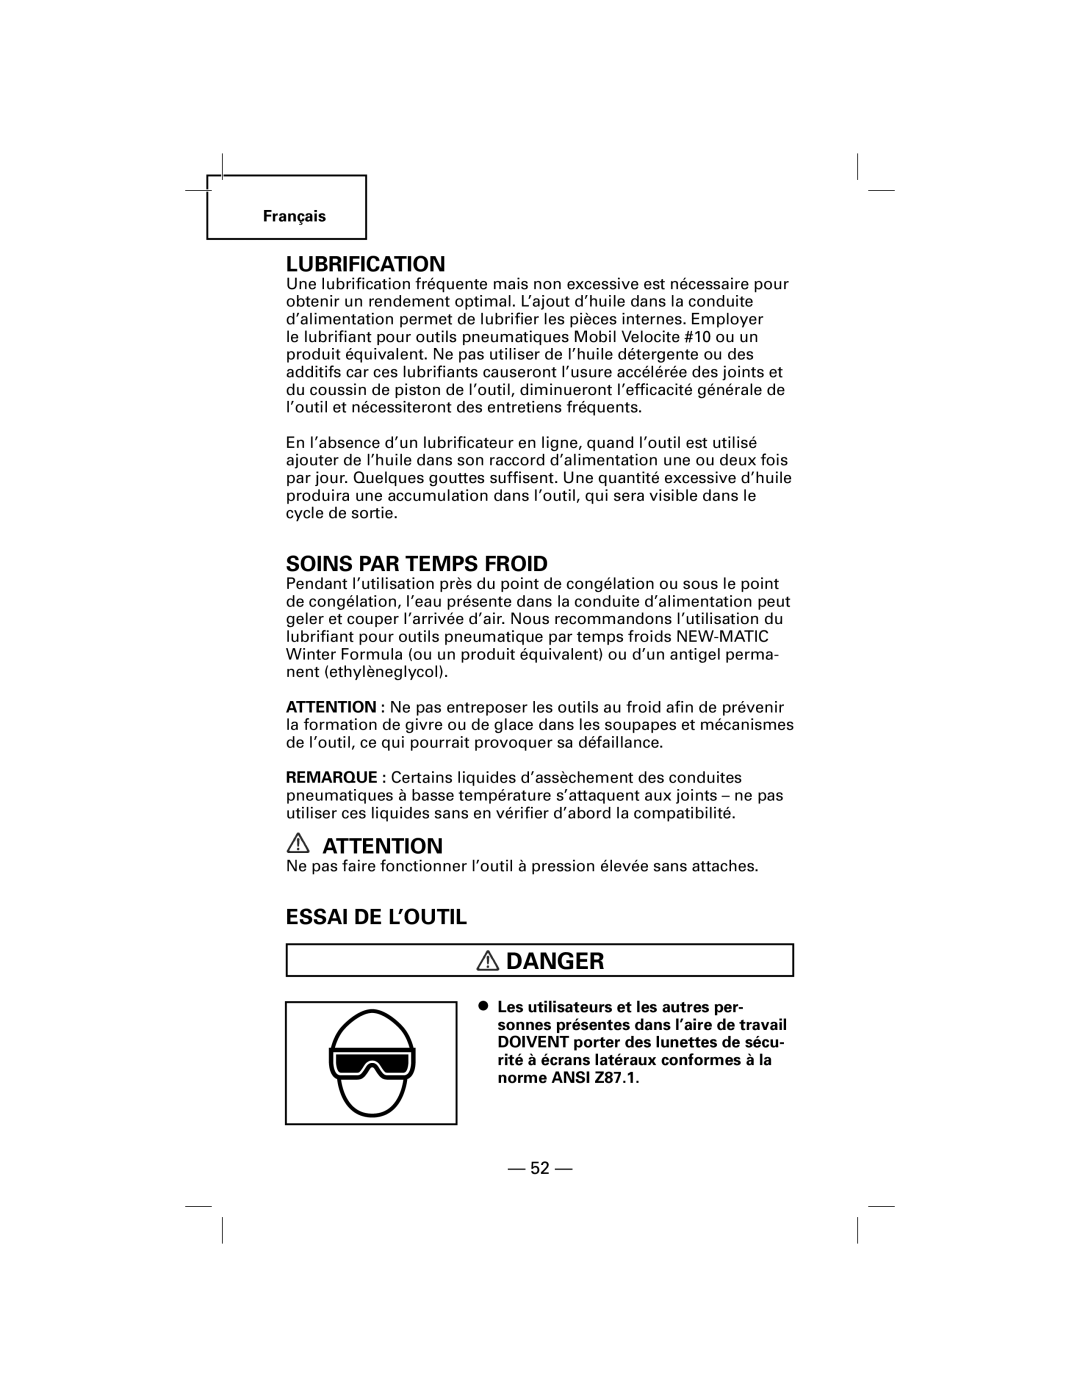 Hitachi N5009AF, NT50AF manual Lubrification, Soins Par Temps Froid, Essai De L’Outil, Danger 